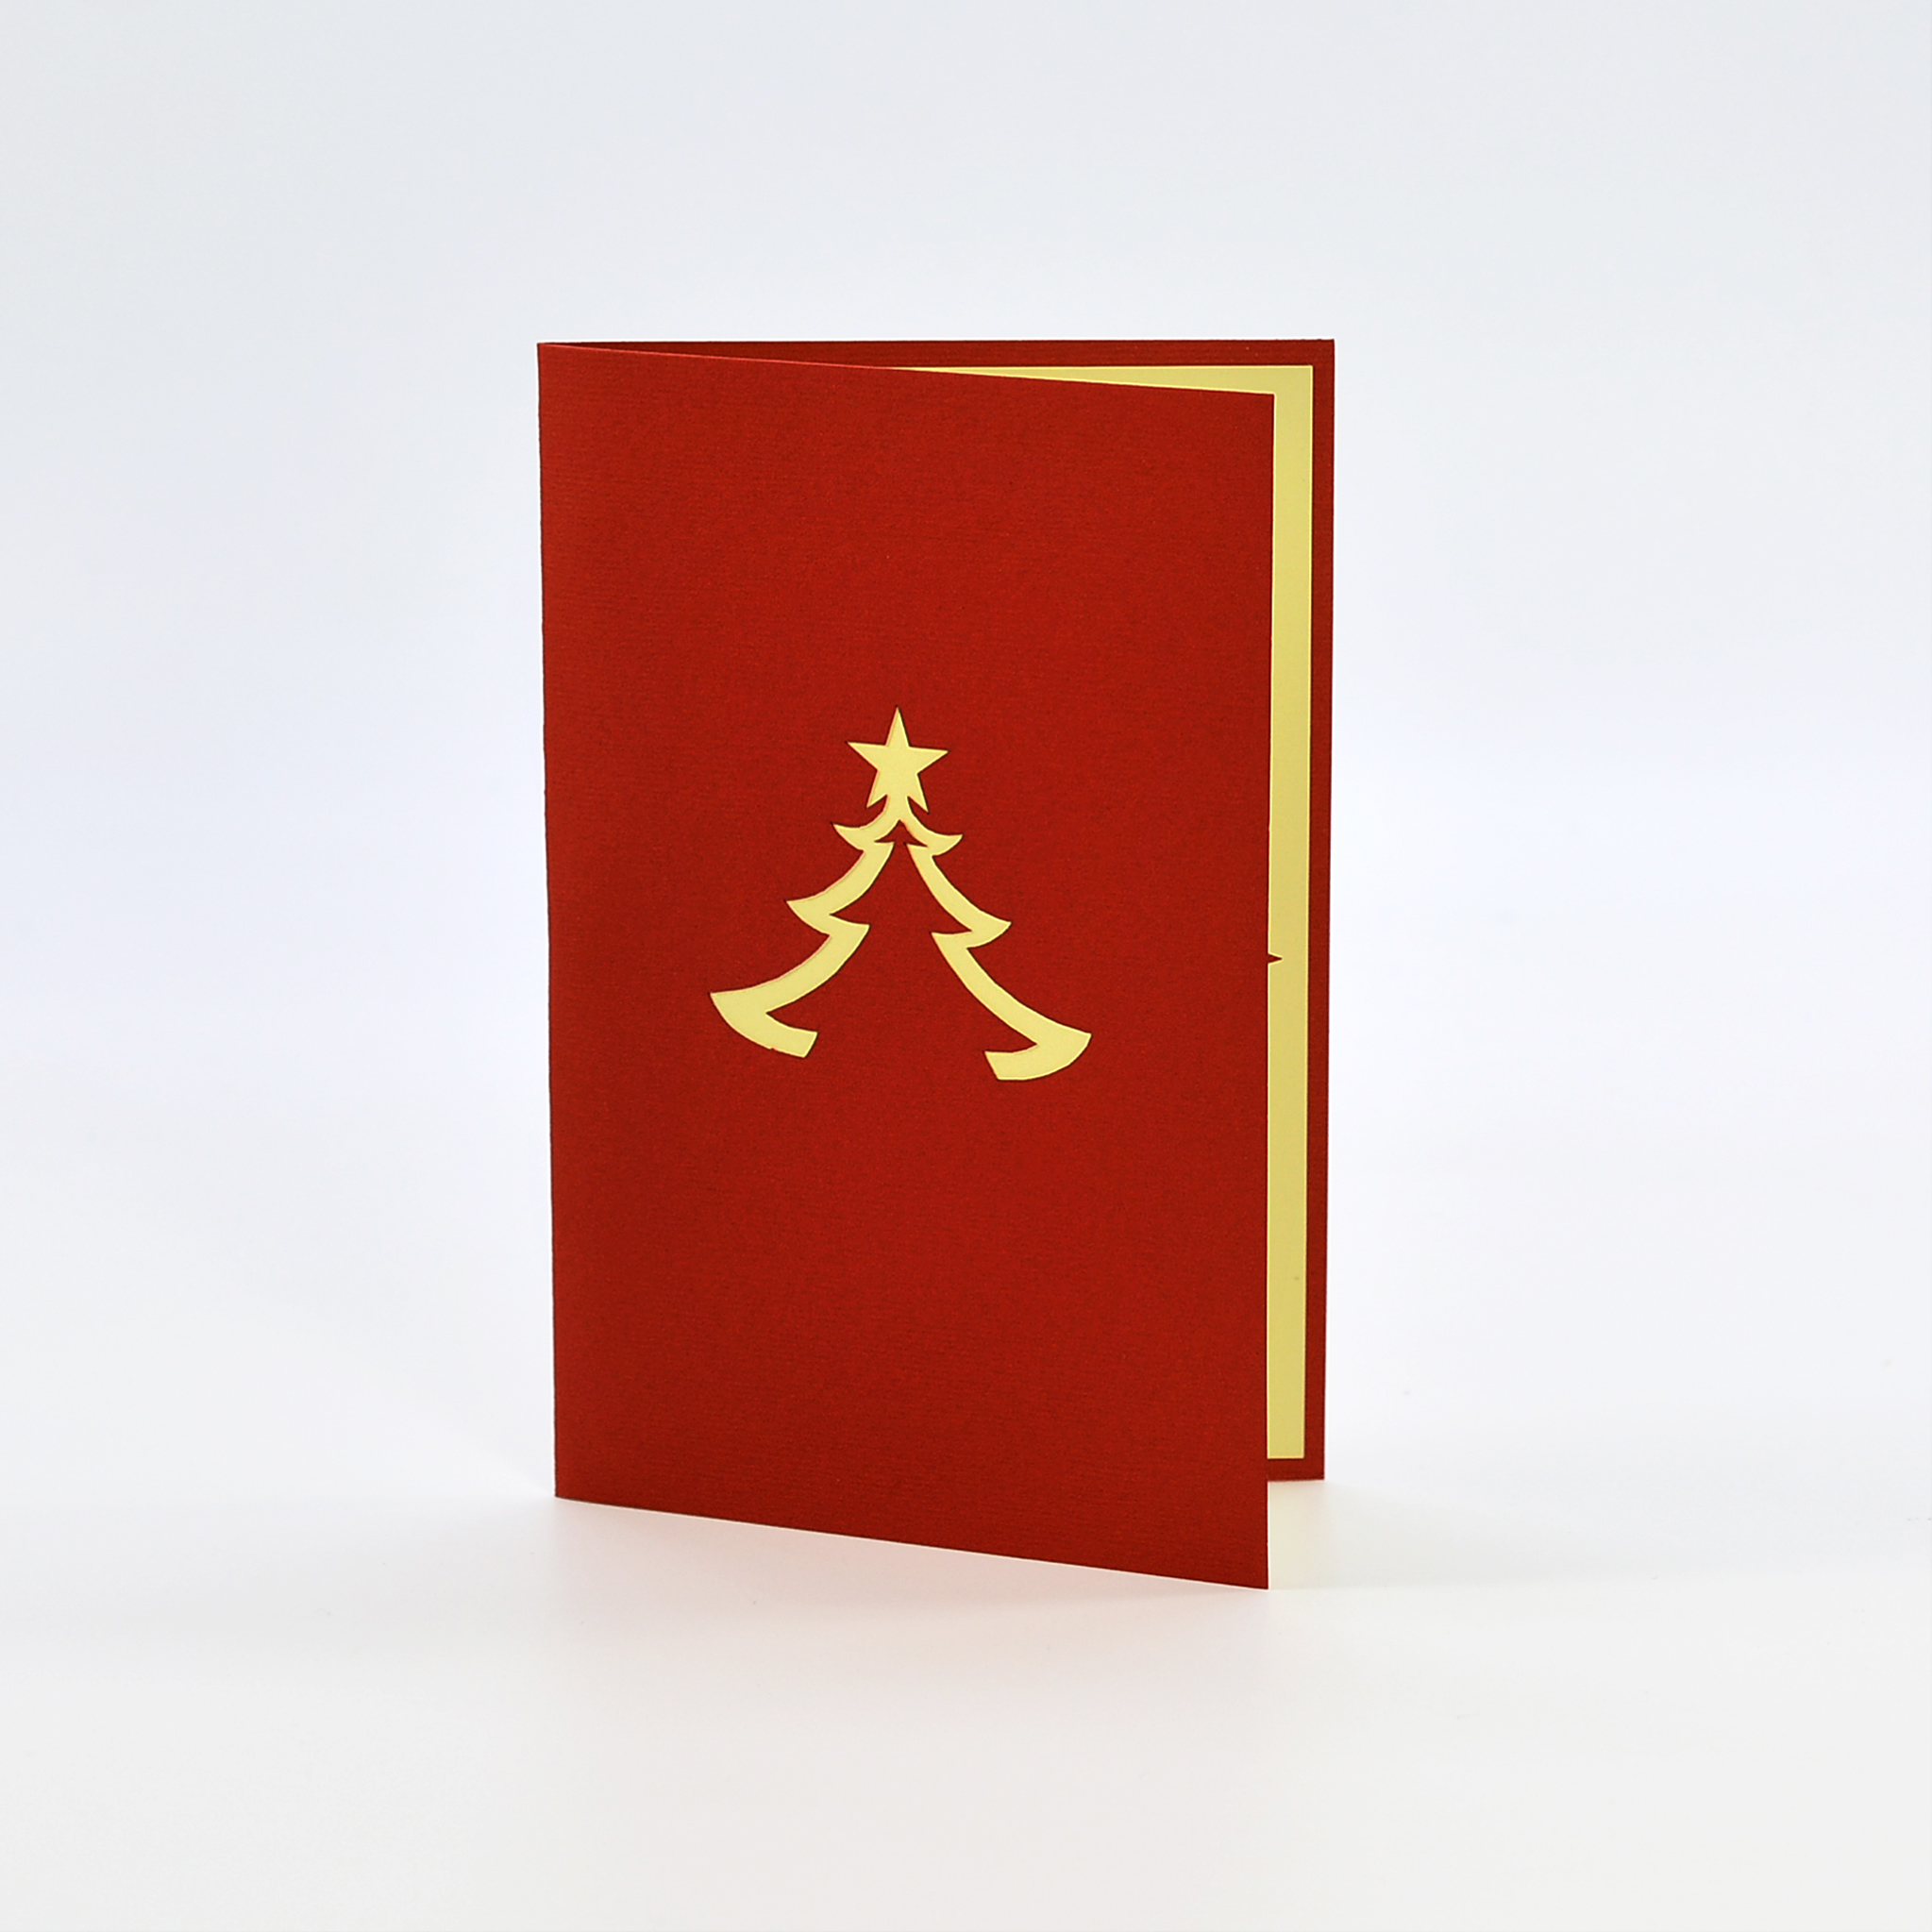 Thiệp nổi 3D handmade, 3D pop-up card, Cây thông cho ngày Giáng sinh, Merry Christmas card size 10x15cm CN033